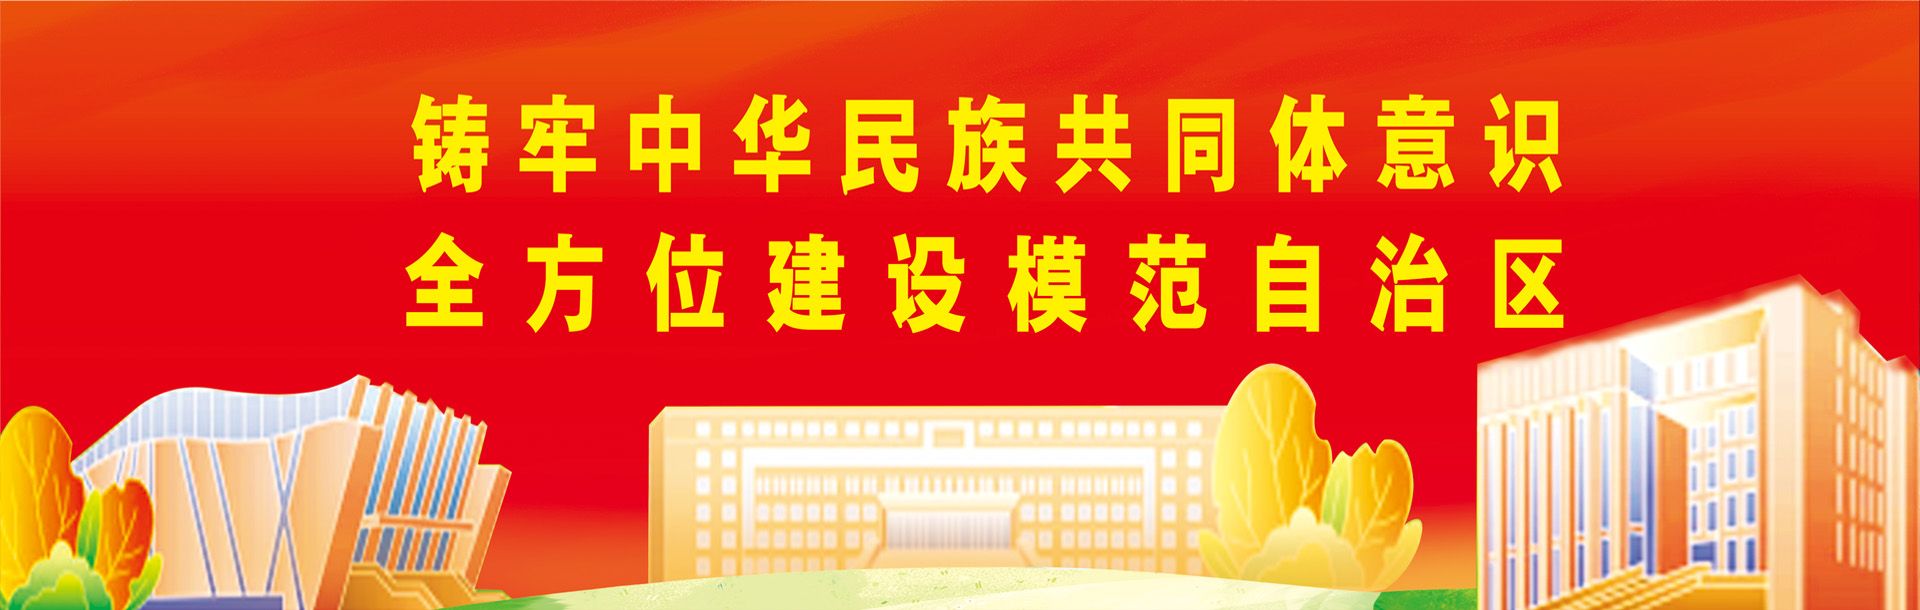 铸牢中华民族共同体意识 全方位建设模范自治区